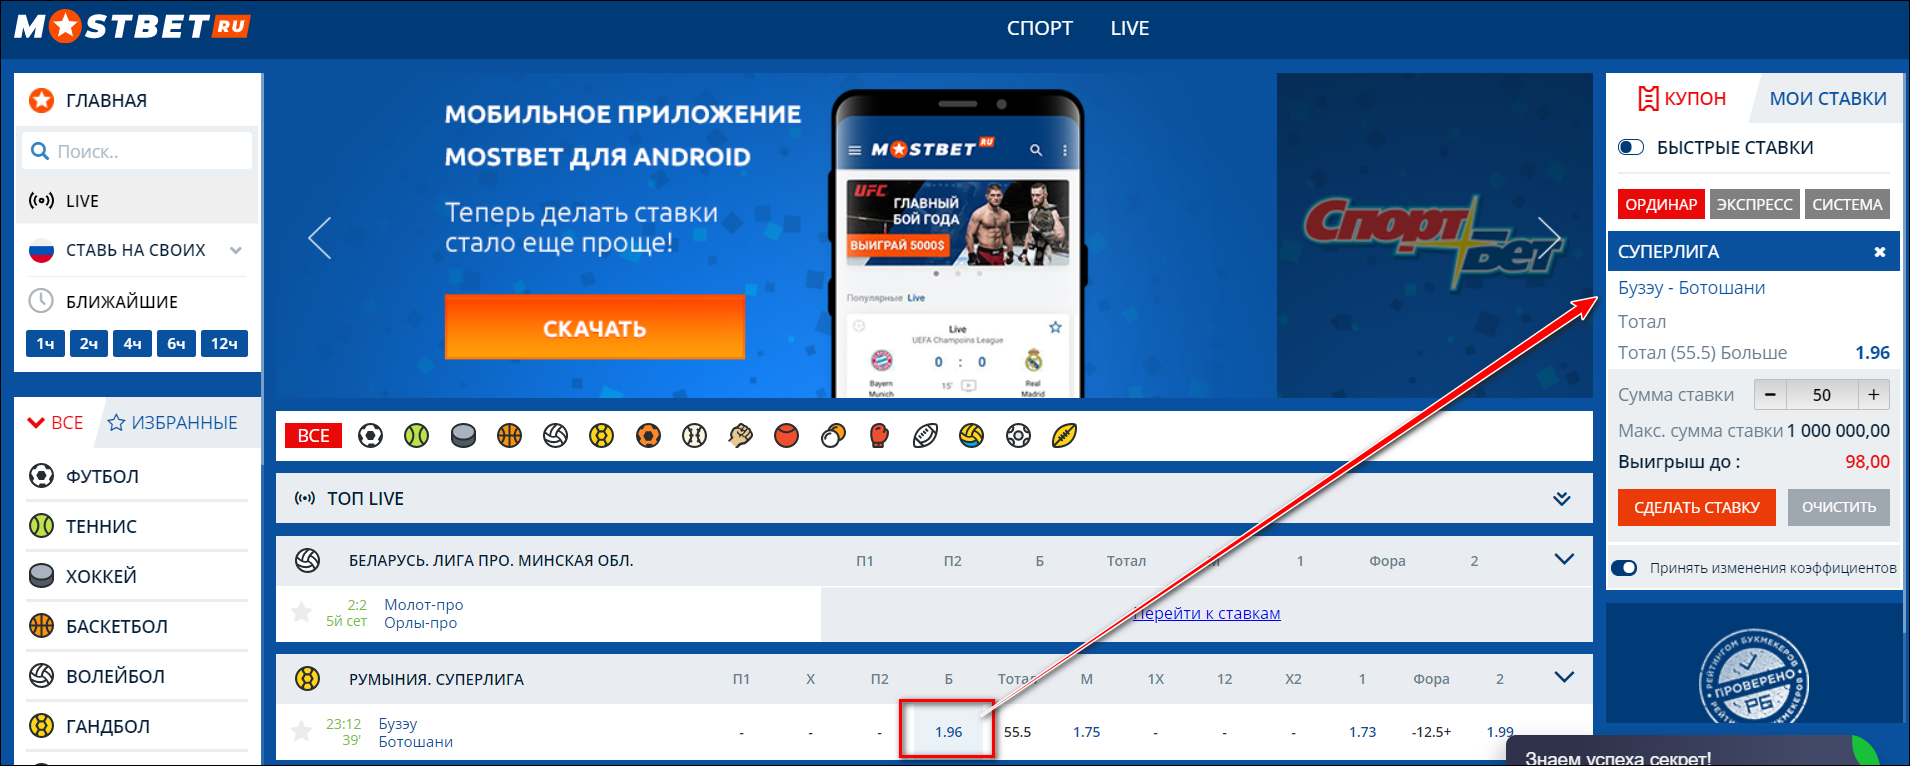 Мостбет официальный www mostbet android ru покердом работает в россии